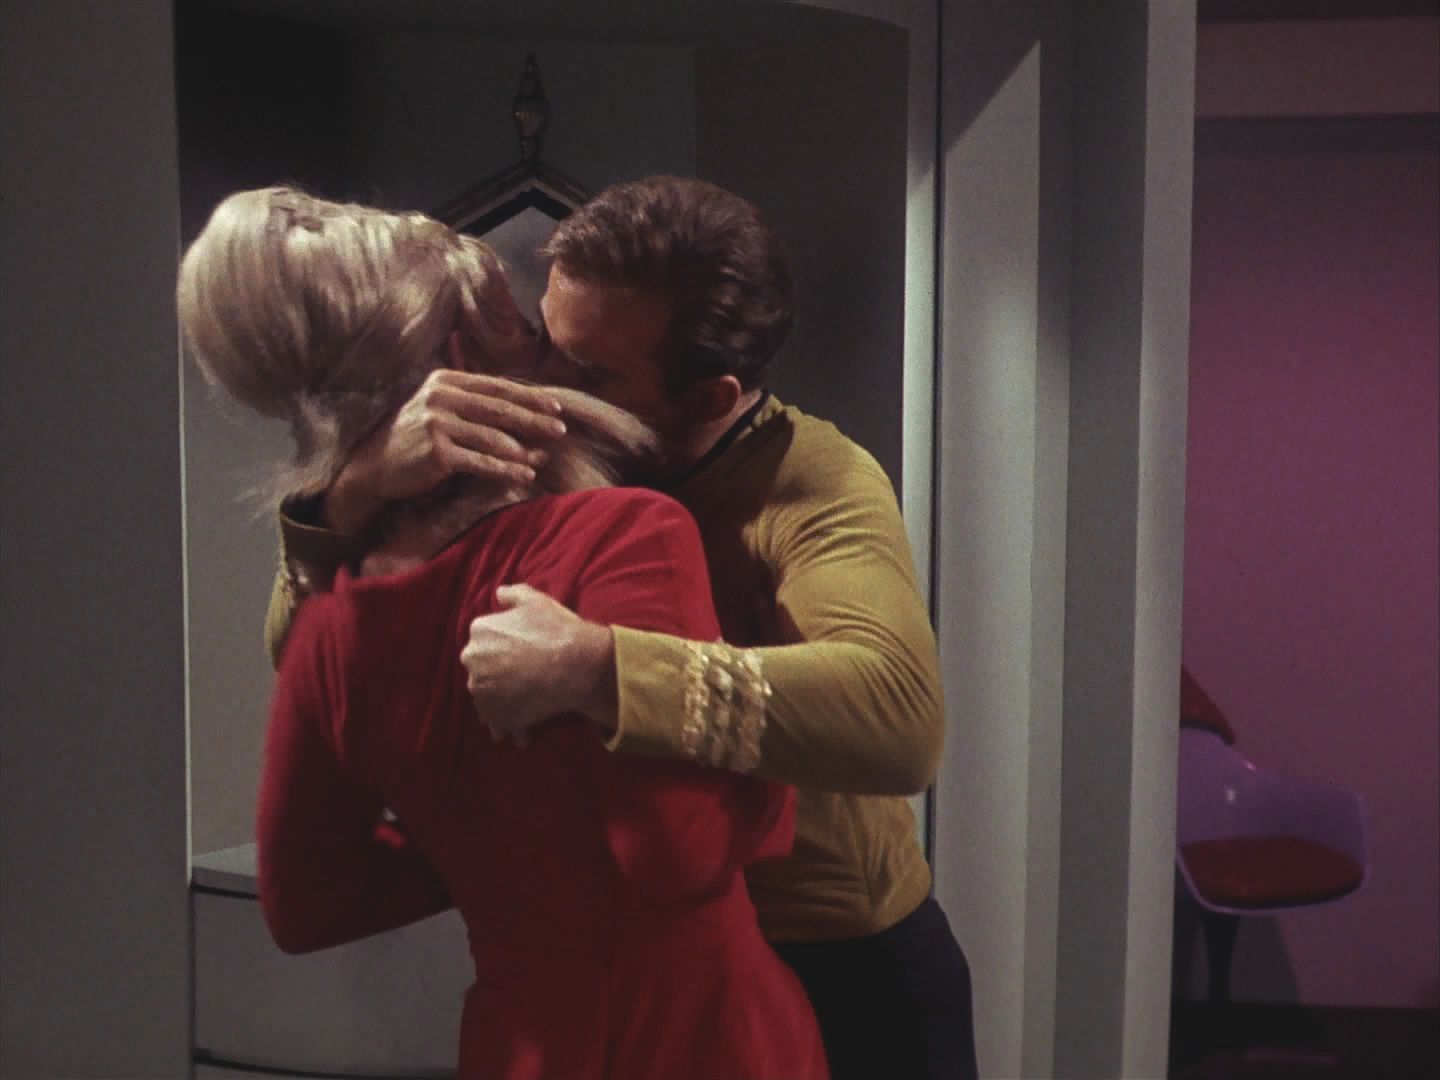 Opilý "zlý" Kirk napadl Janice Randovou, která by se mu neubránila, kdyby nevkročil Fisher. Jen Kirkova dvojníka poškrábala na tváři. Janice utekla a "hodný" Kirk má problém.